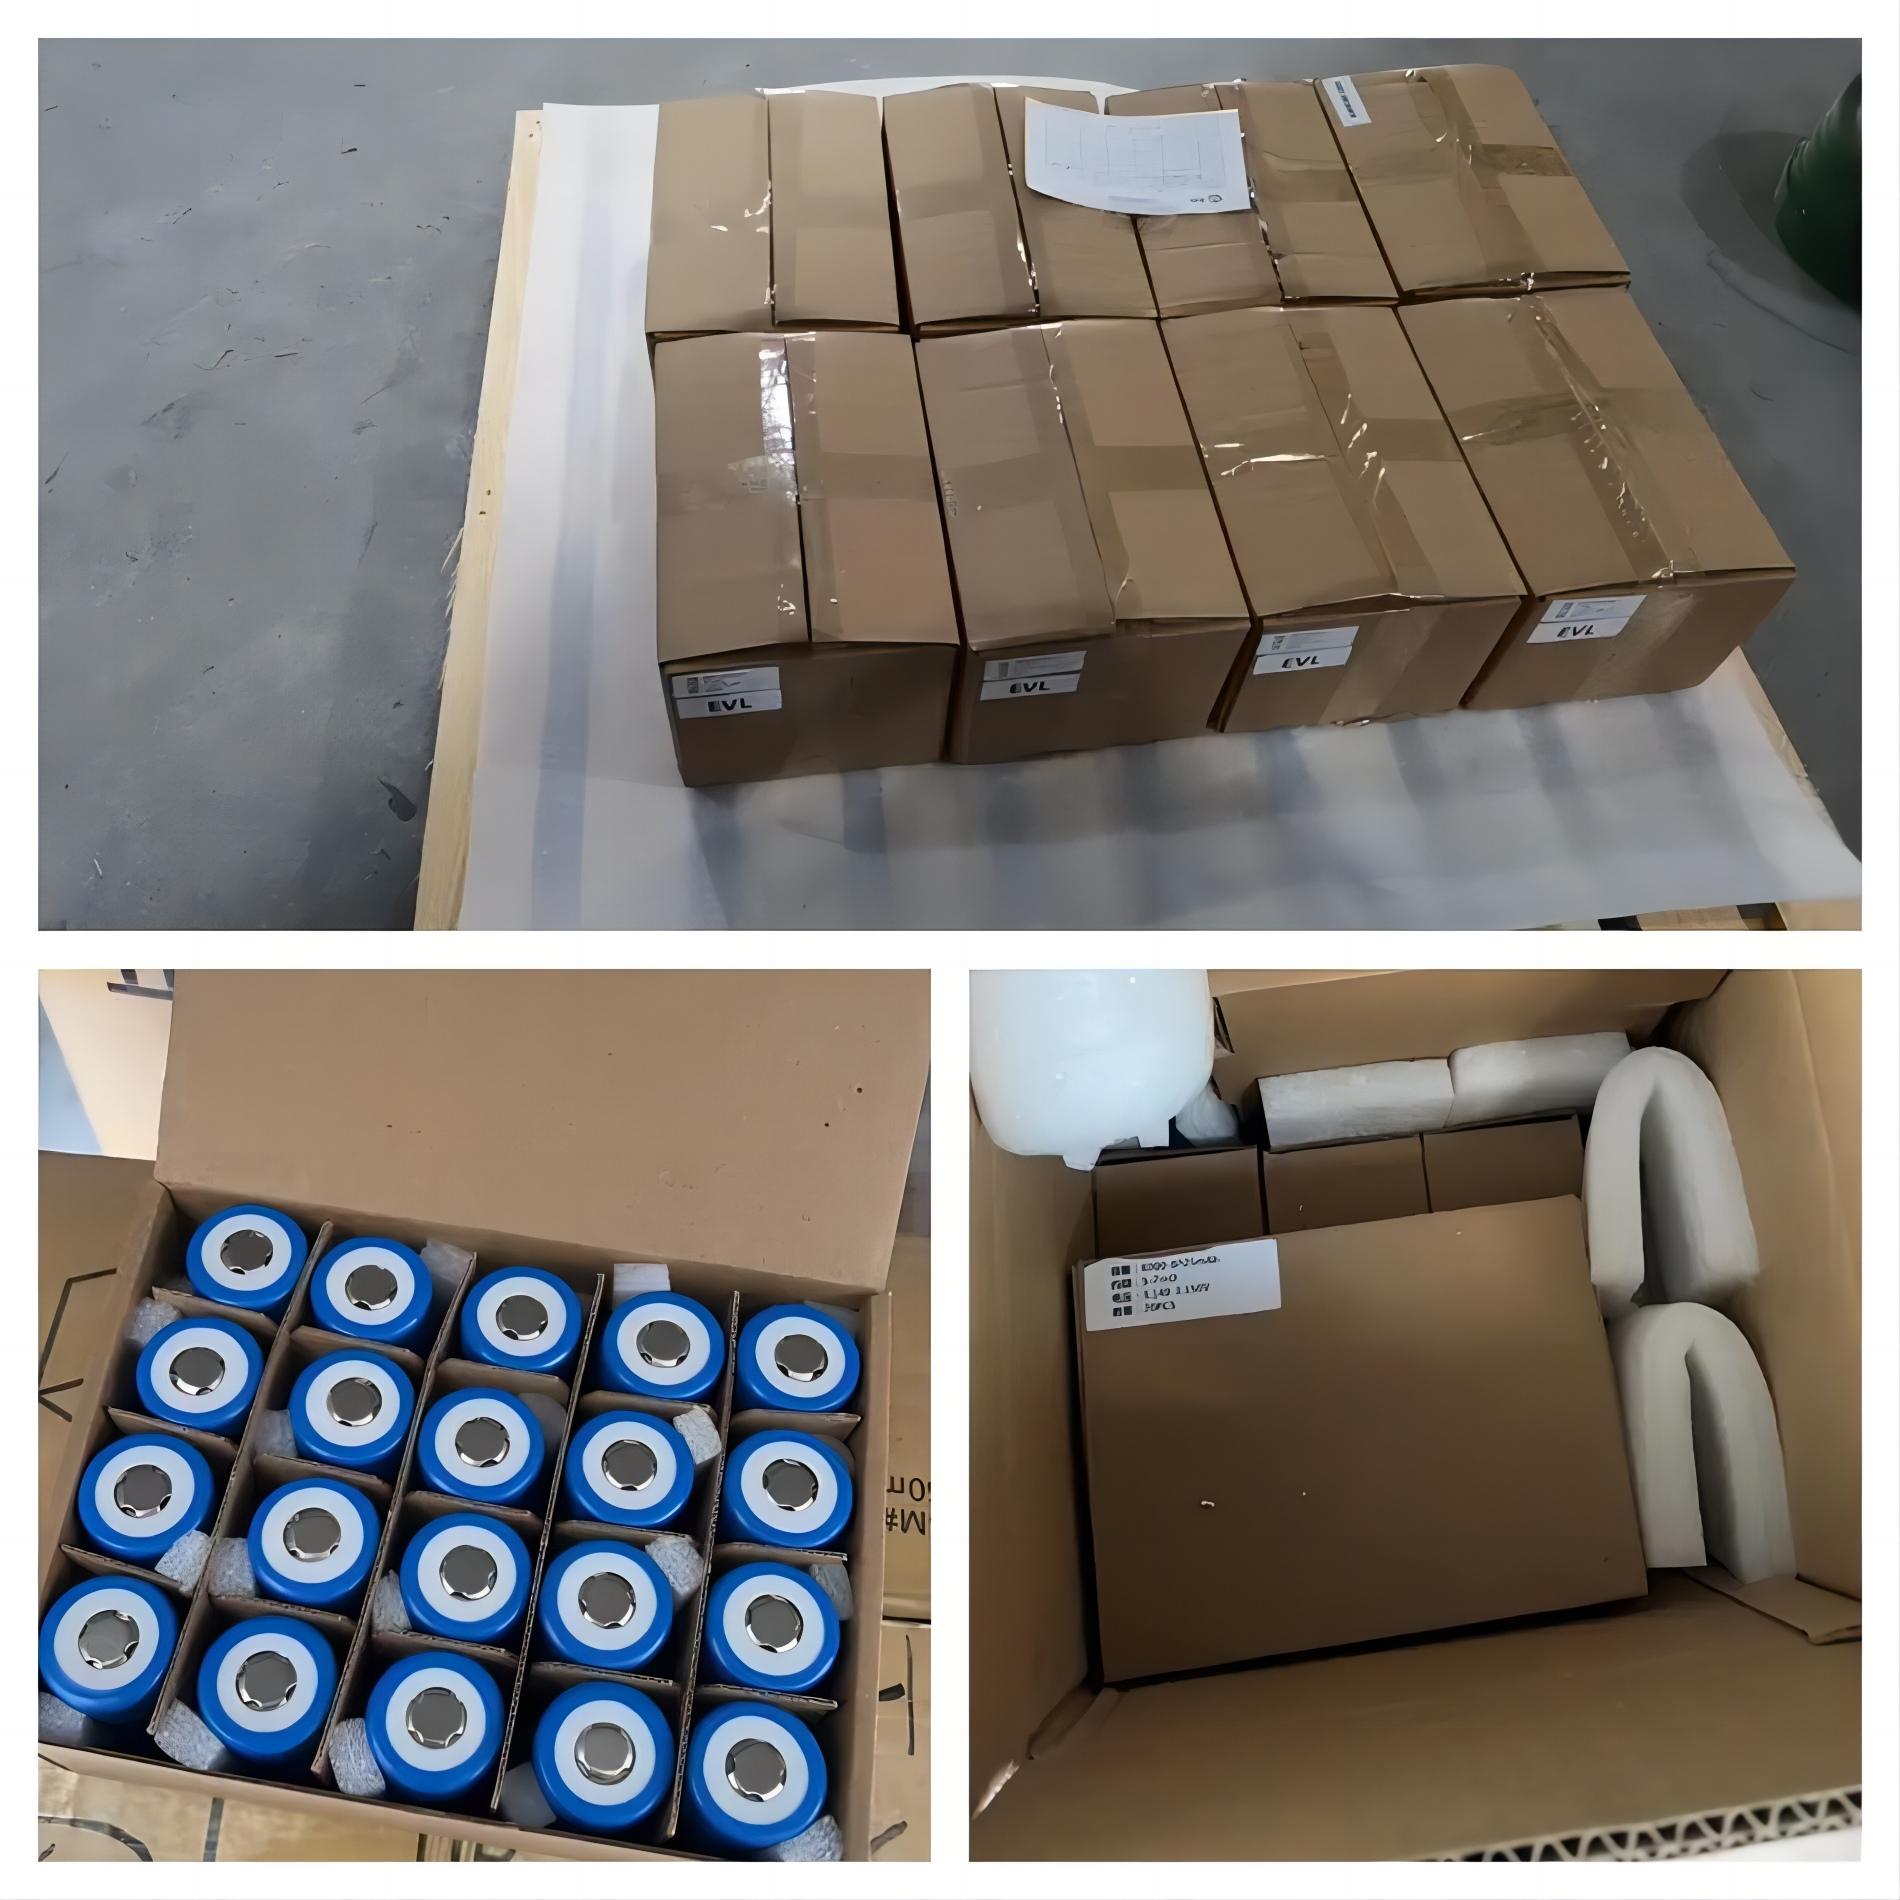 Prompt Shipment of 600pcs 32700 3.2v 6000mah LiFePO4 Batteries for Prototype Testing